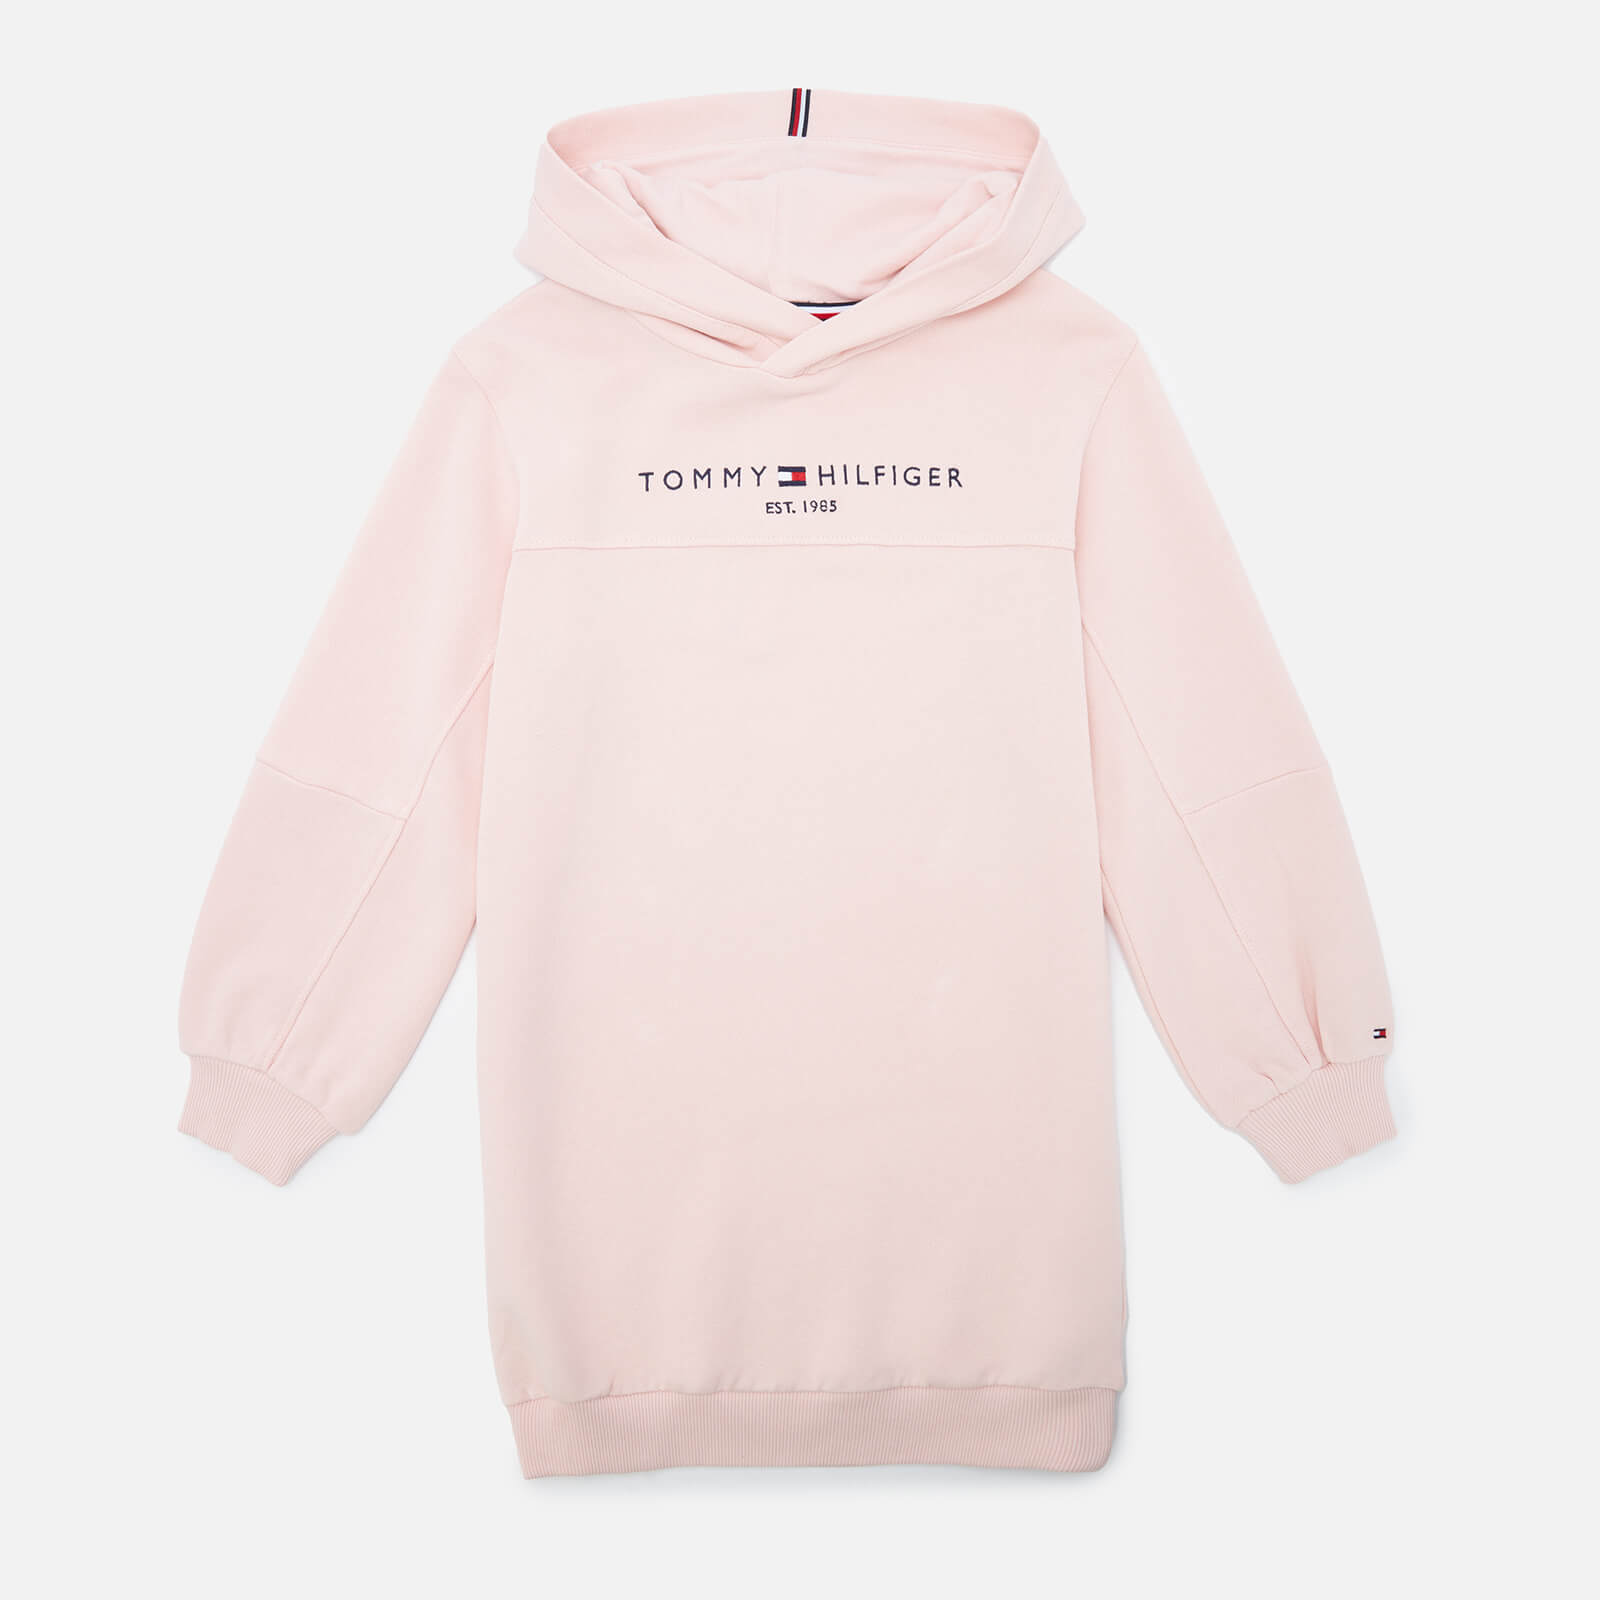 Tommy Hilfiger Girls' Essential Hoodie Dress Long Sleeve - Delicate Pink - 6 Years